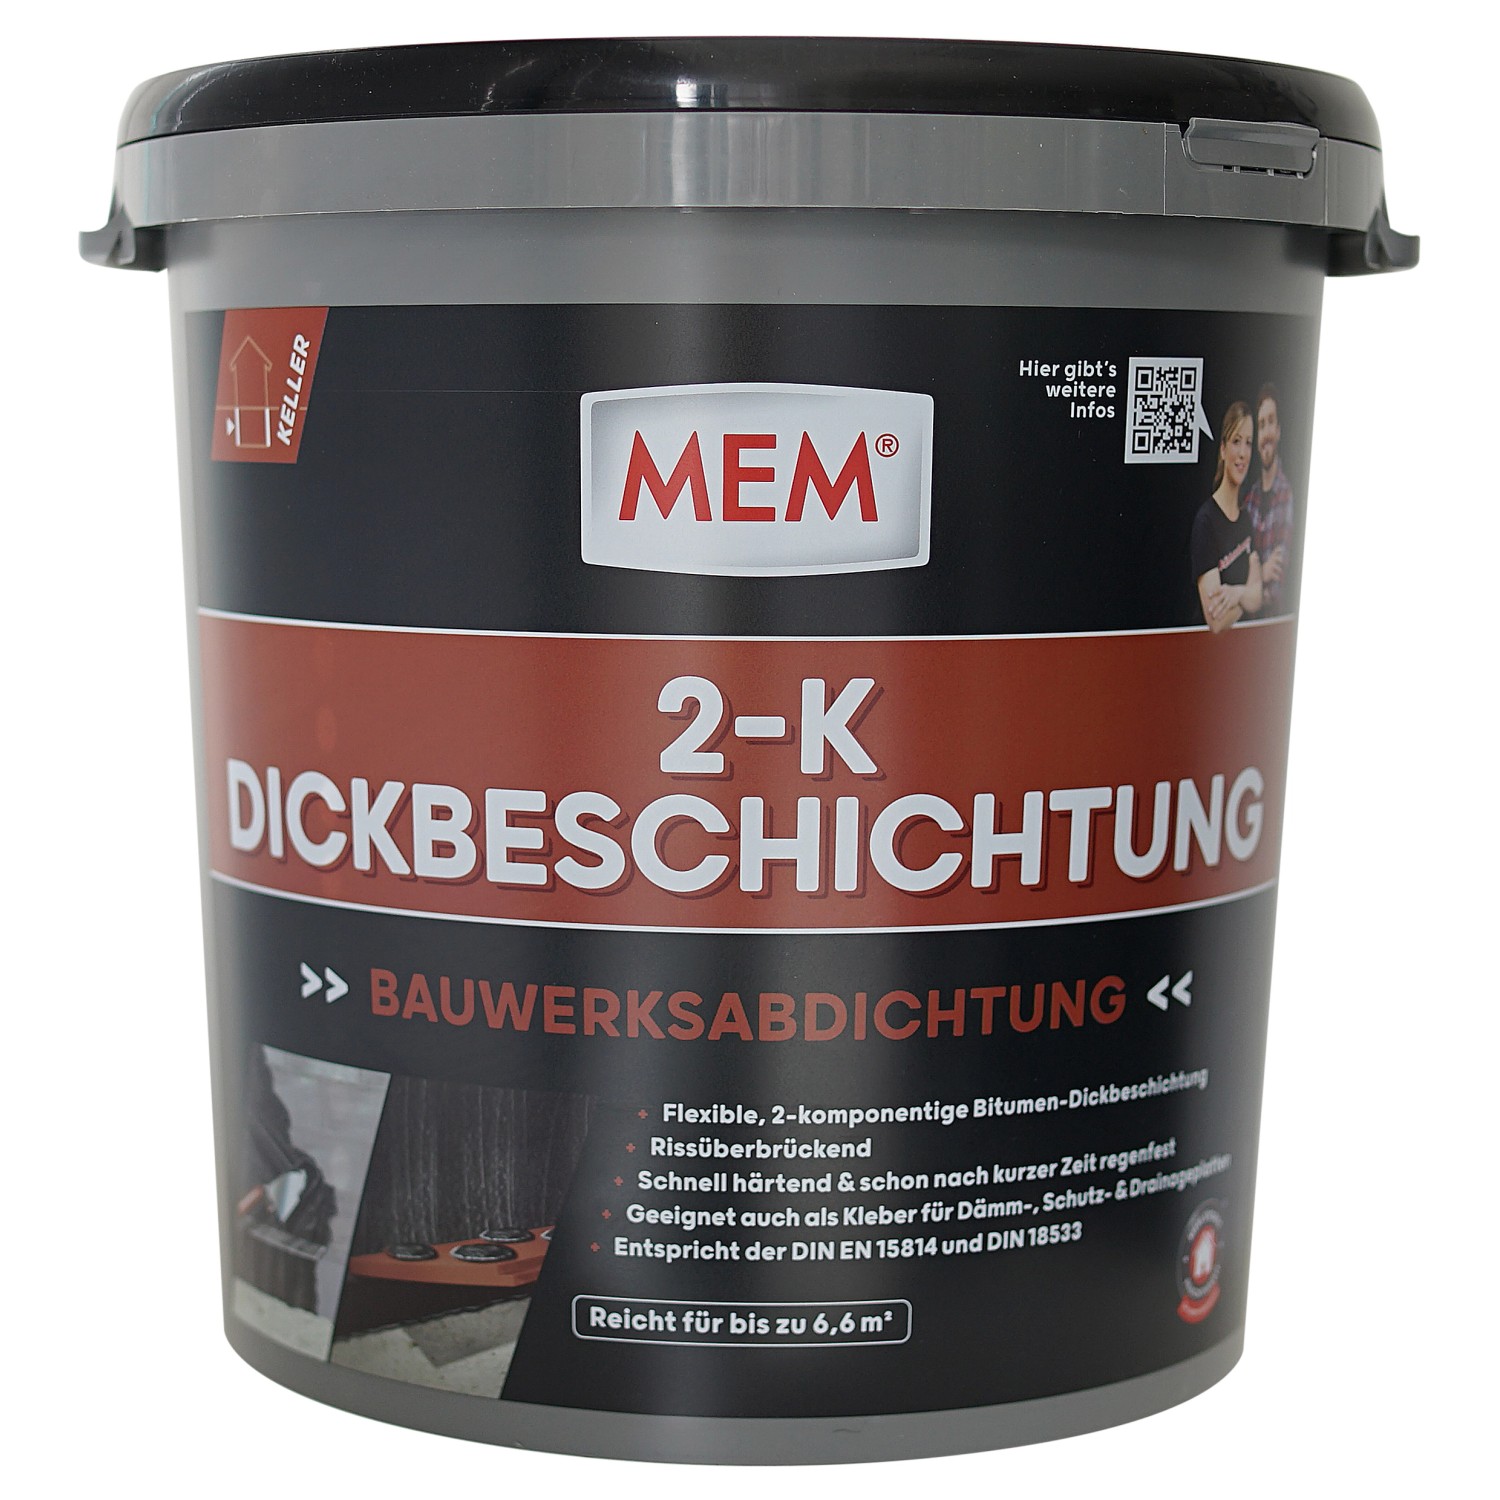 MEM 2-K Dickbeschichtung 30 kg